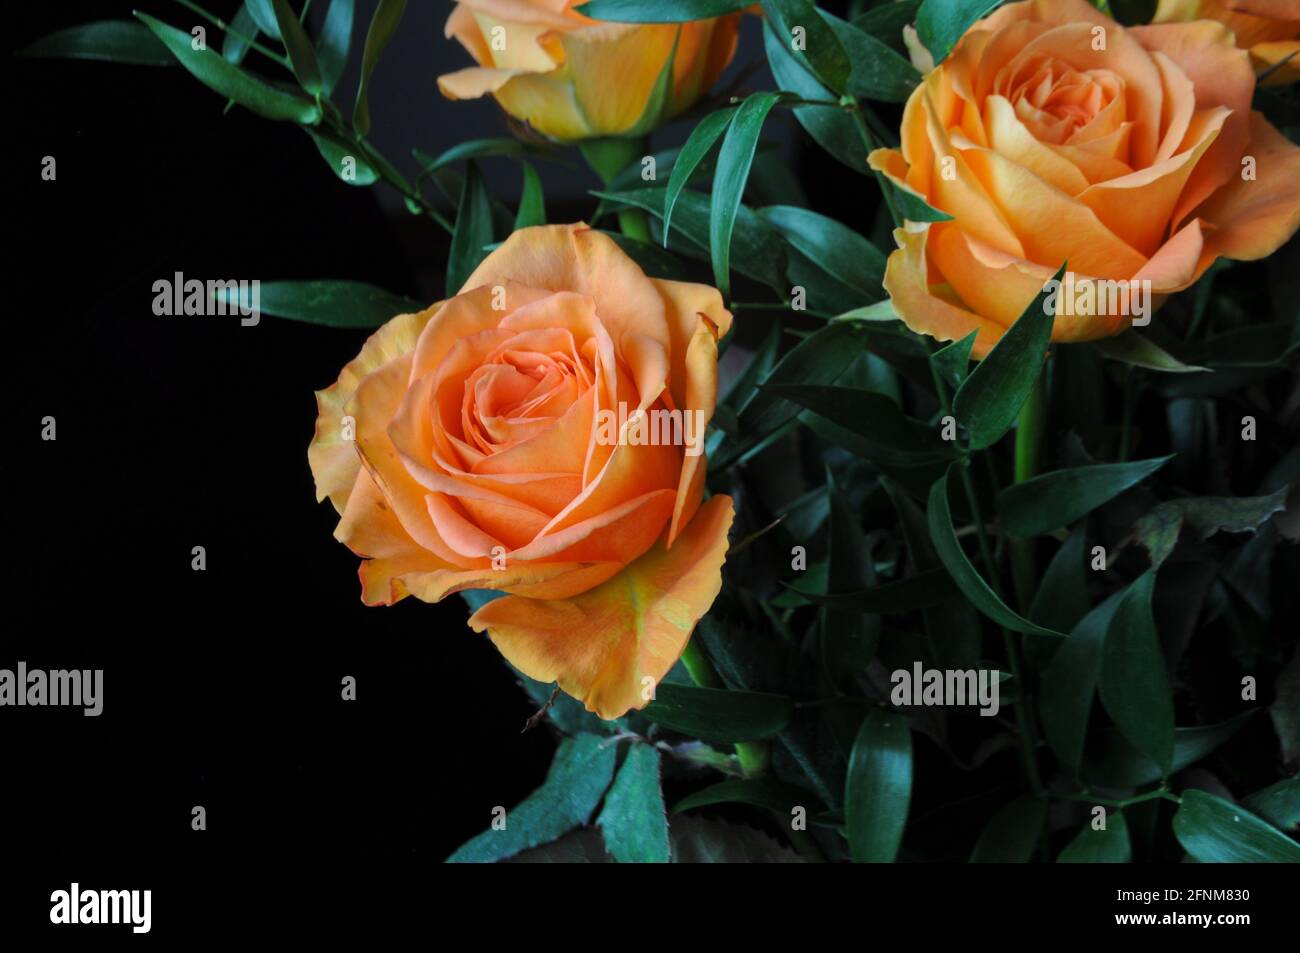 Bouquet de roses orange sur fond noir pour célébrer des fêtes telles que la Saint-Valentin, l'anniversaire, la fête des mères ou la Journée internationale de la femme Banque D'Images